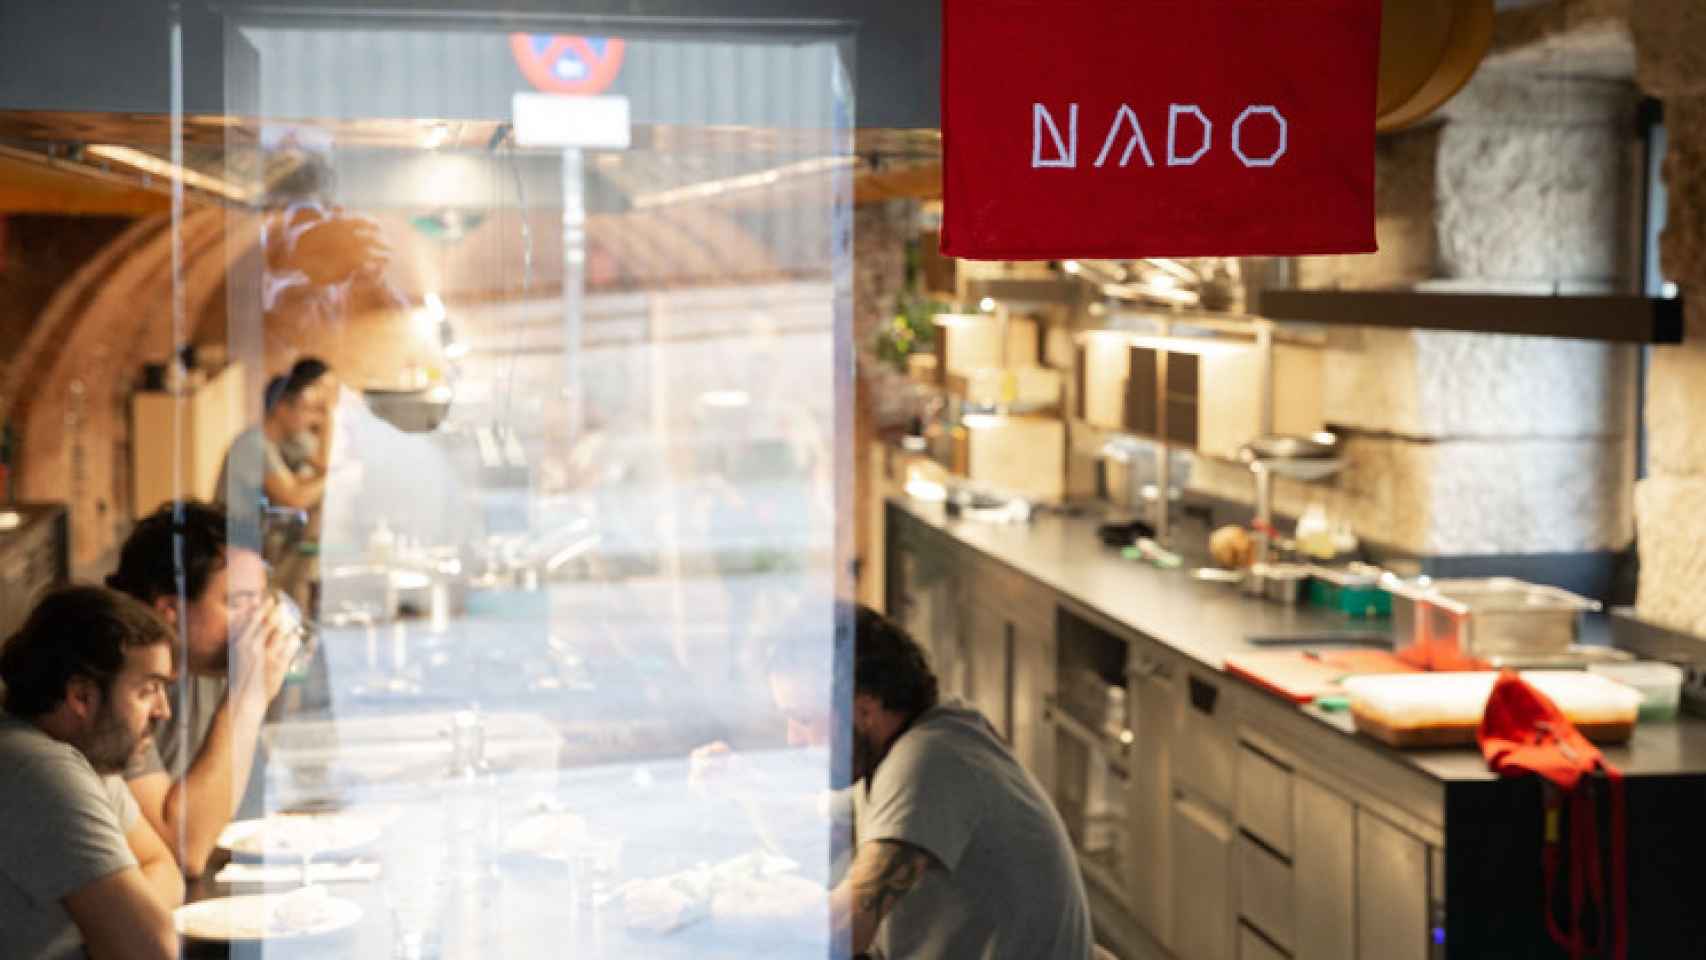 Restaurante NaDo.